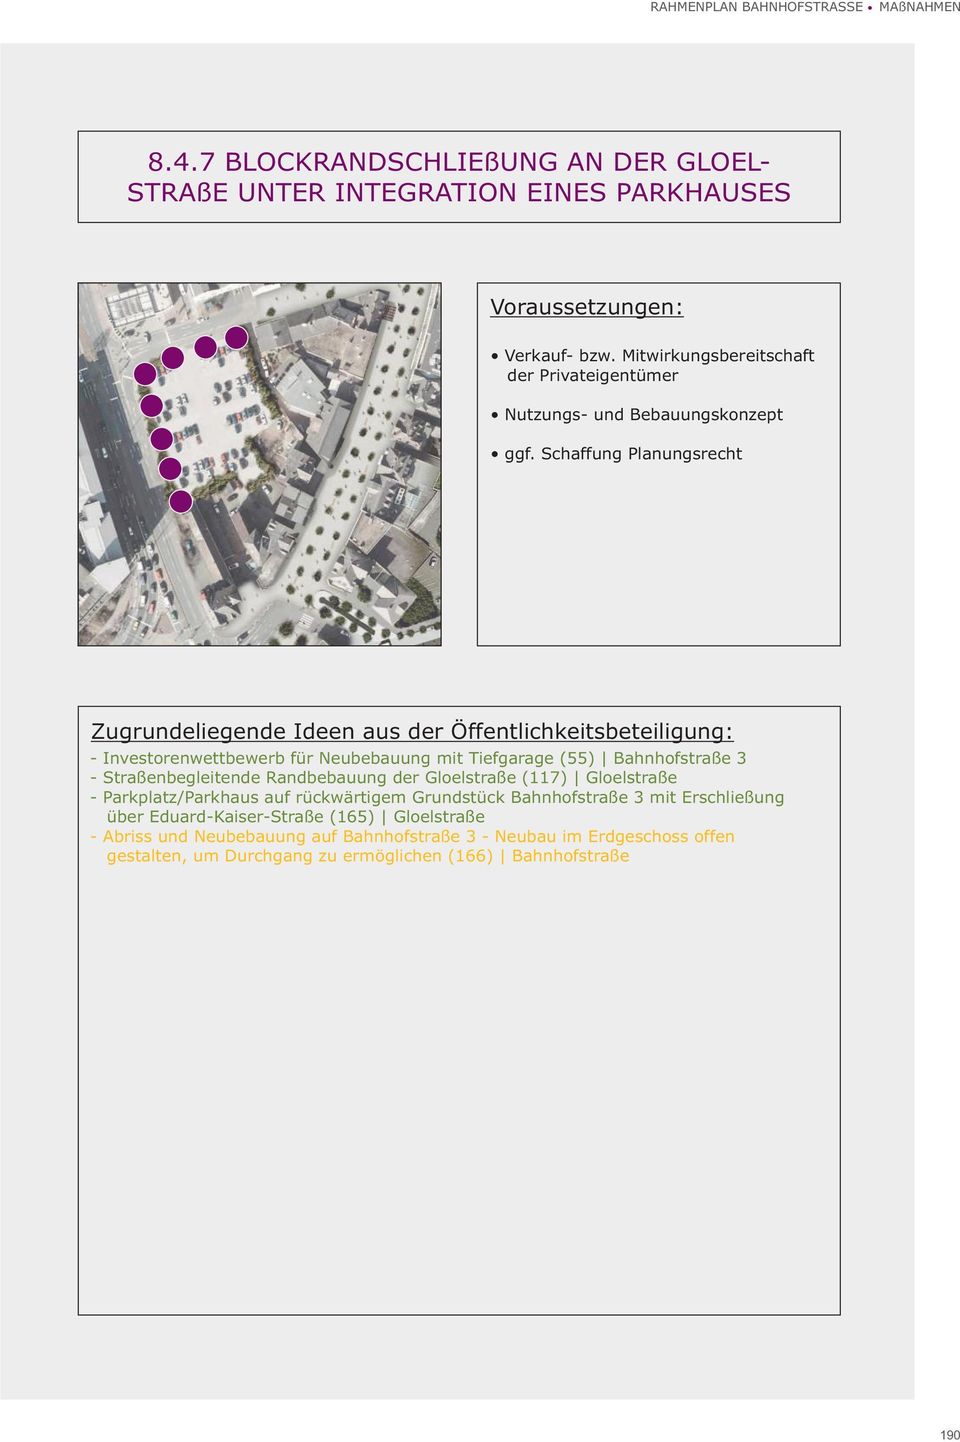 Schaffung Planungsrecht - Investorenwettbewerb für Neubebauung mit Tiefgarage (55) Bahnhofstraße 3 - Straßenbegleitende Randbebauung der Gloelstraße